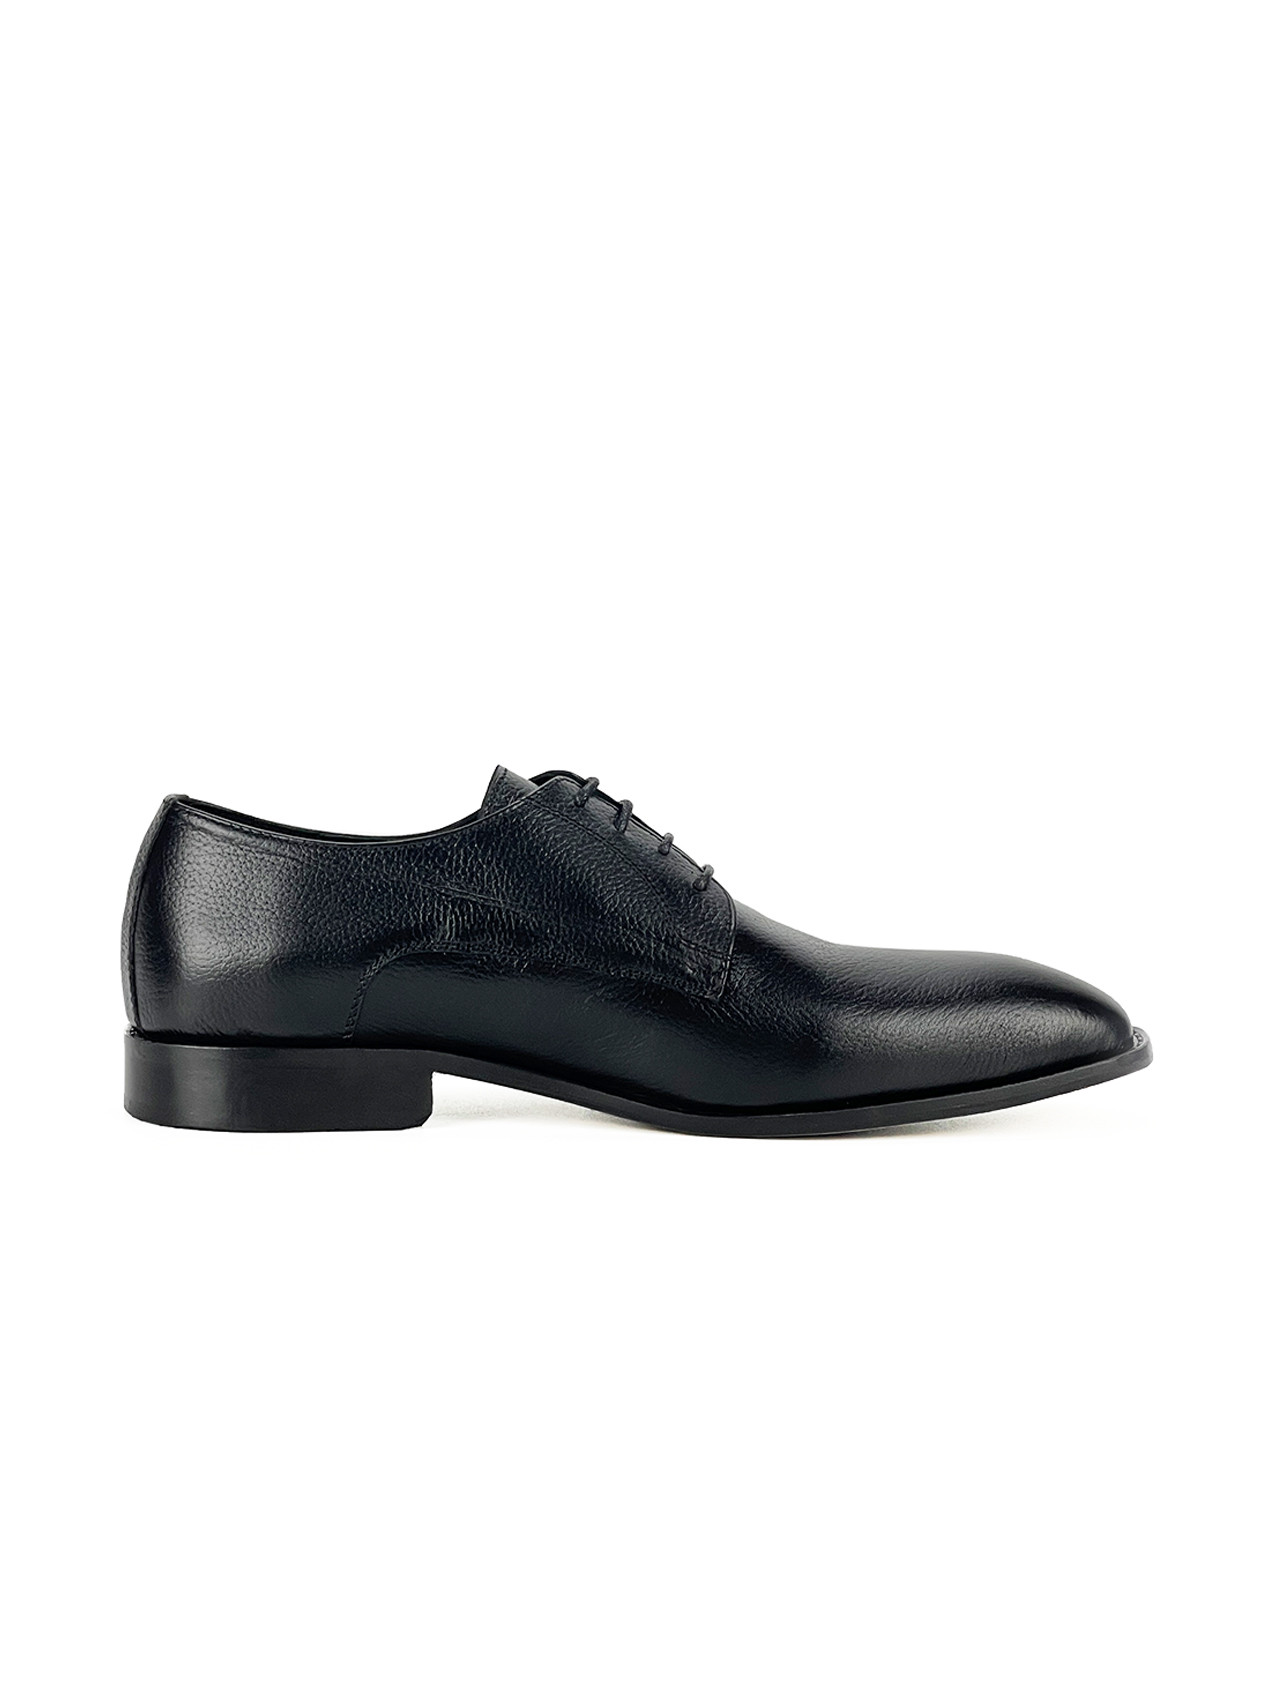 Chaussure hommes MT 100% CUIR, 42, Noir